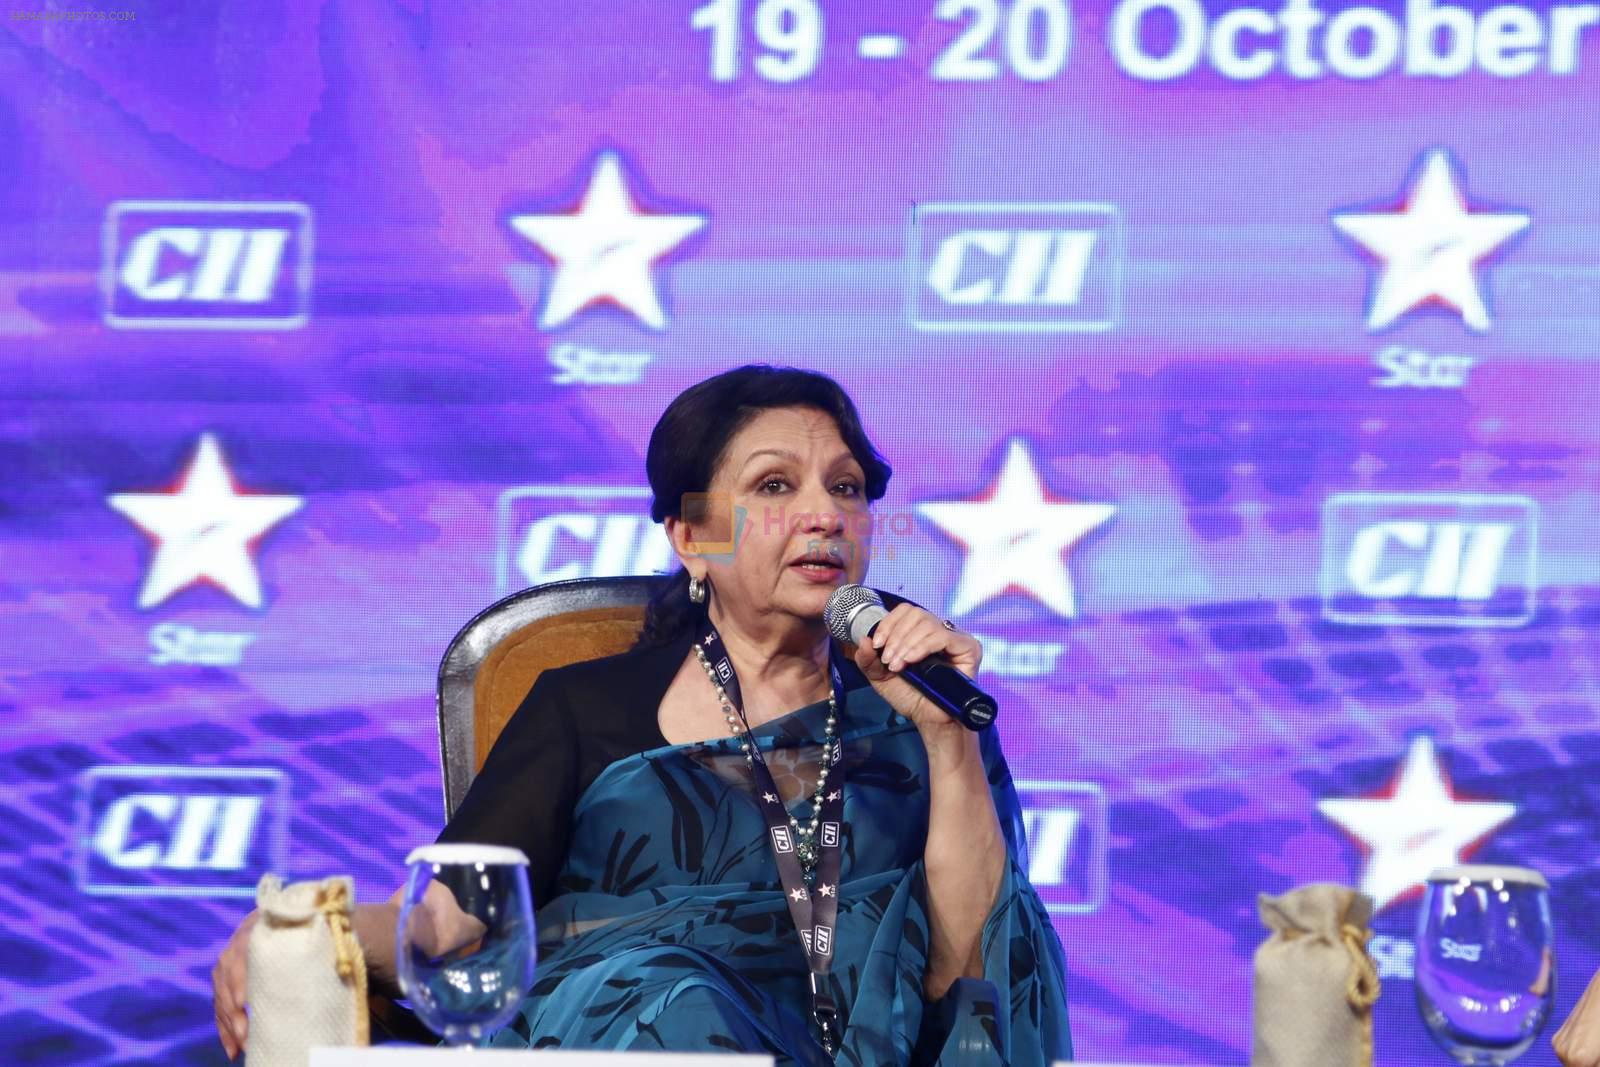 Sharmila Tagore at CII meet in Delhi on 20th Oct 2015